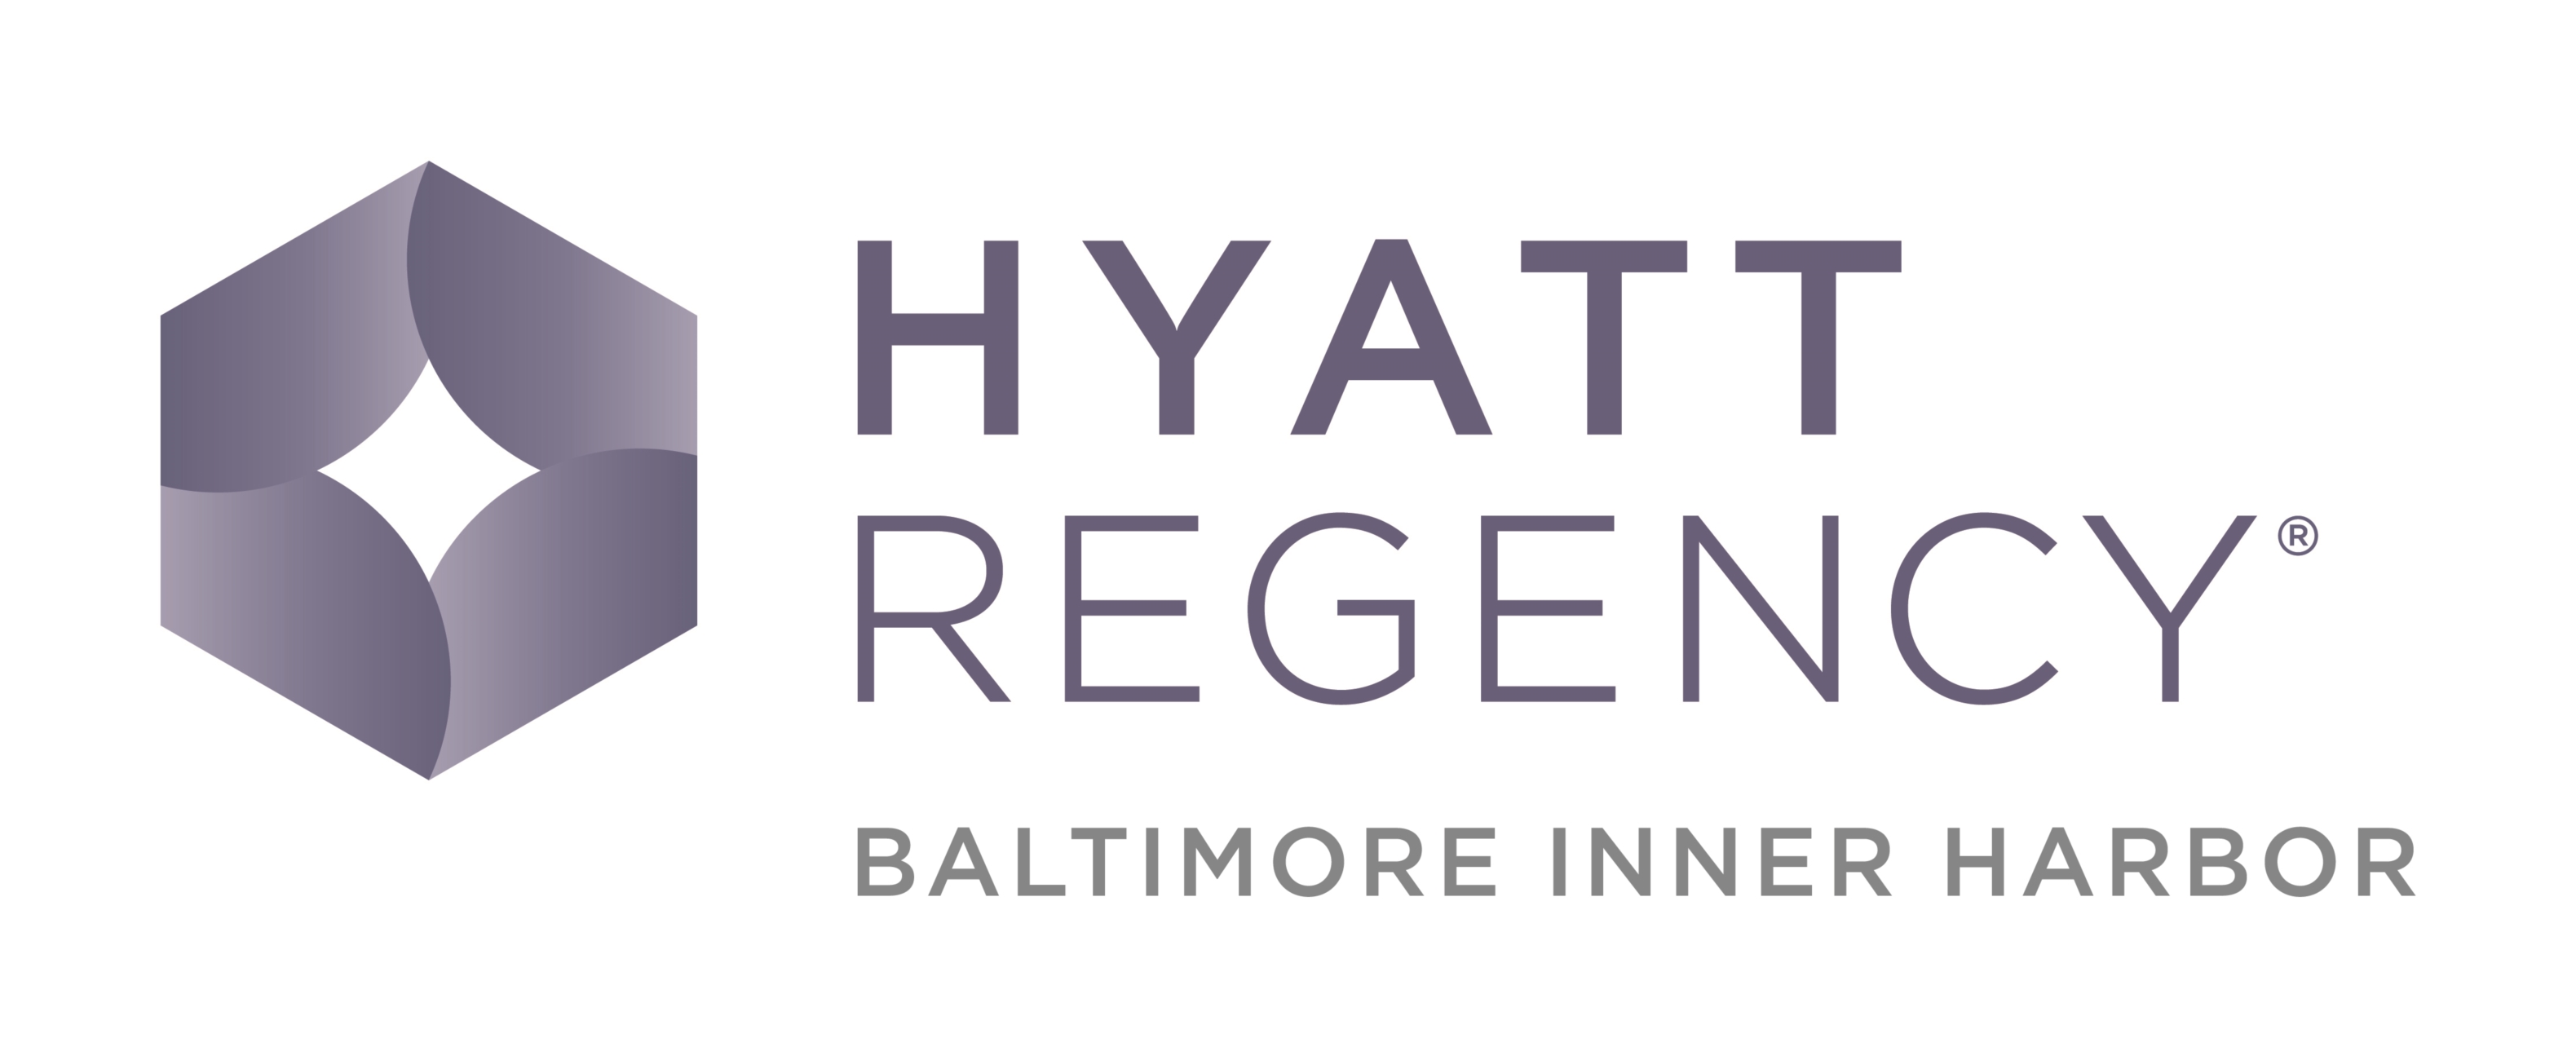 Hyatt Regency Baltimore Inner Harbor logo